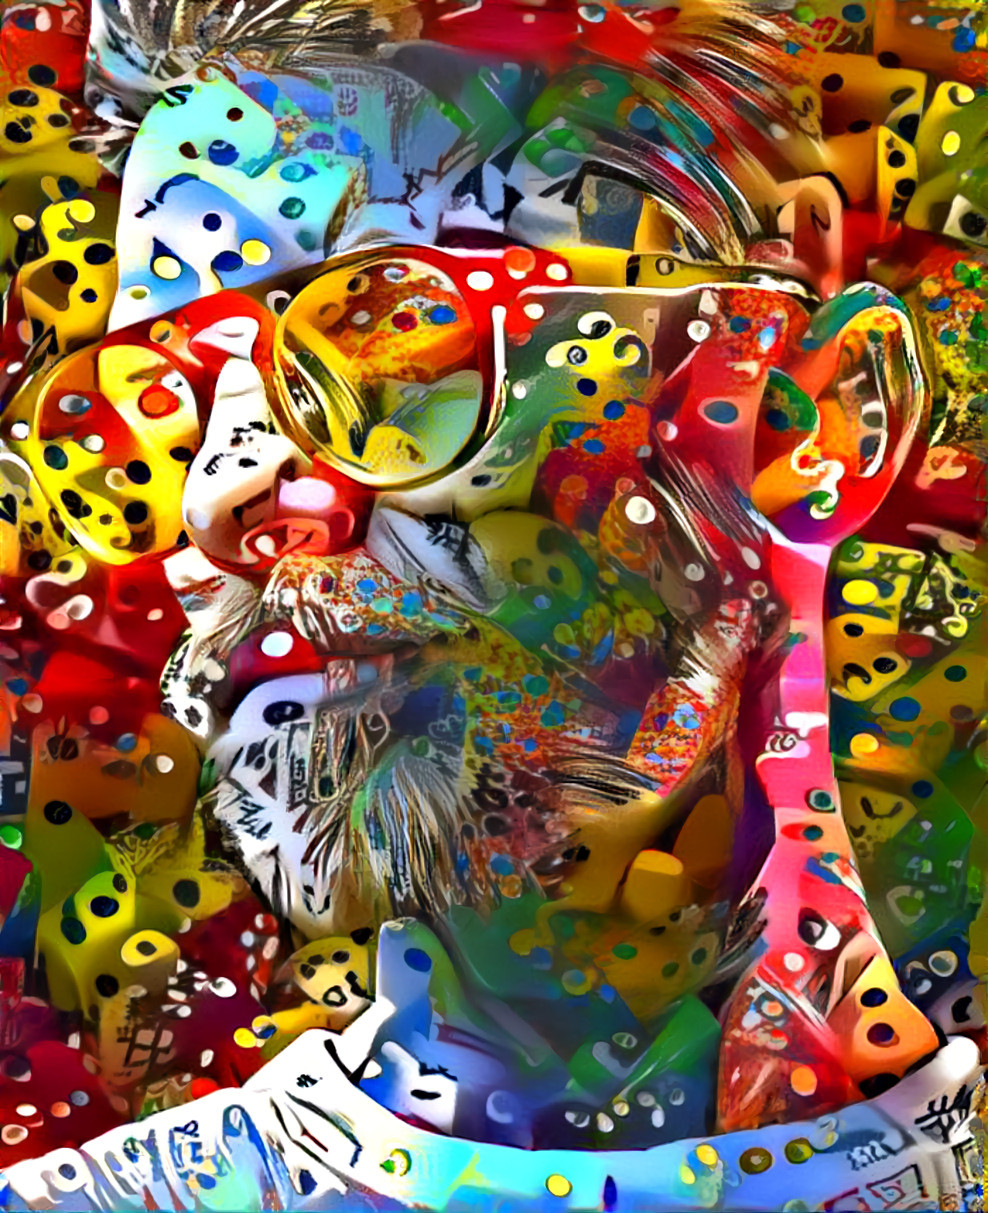 Colored dice